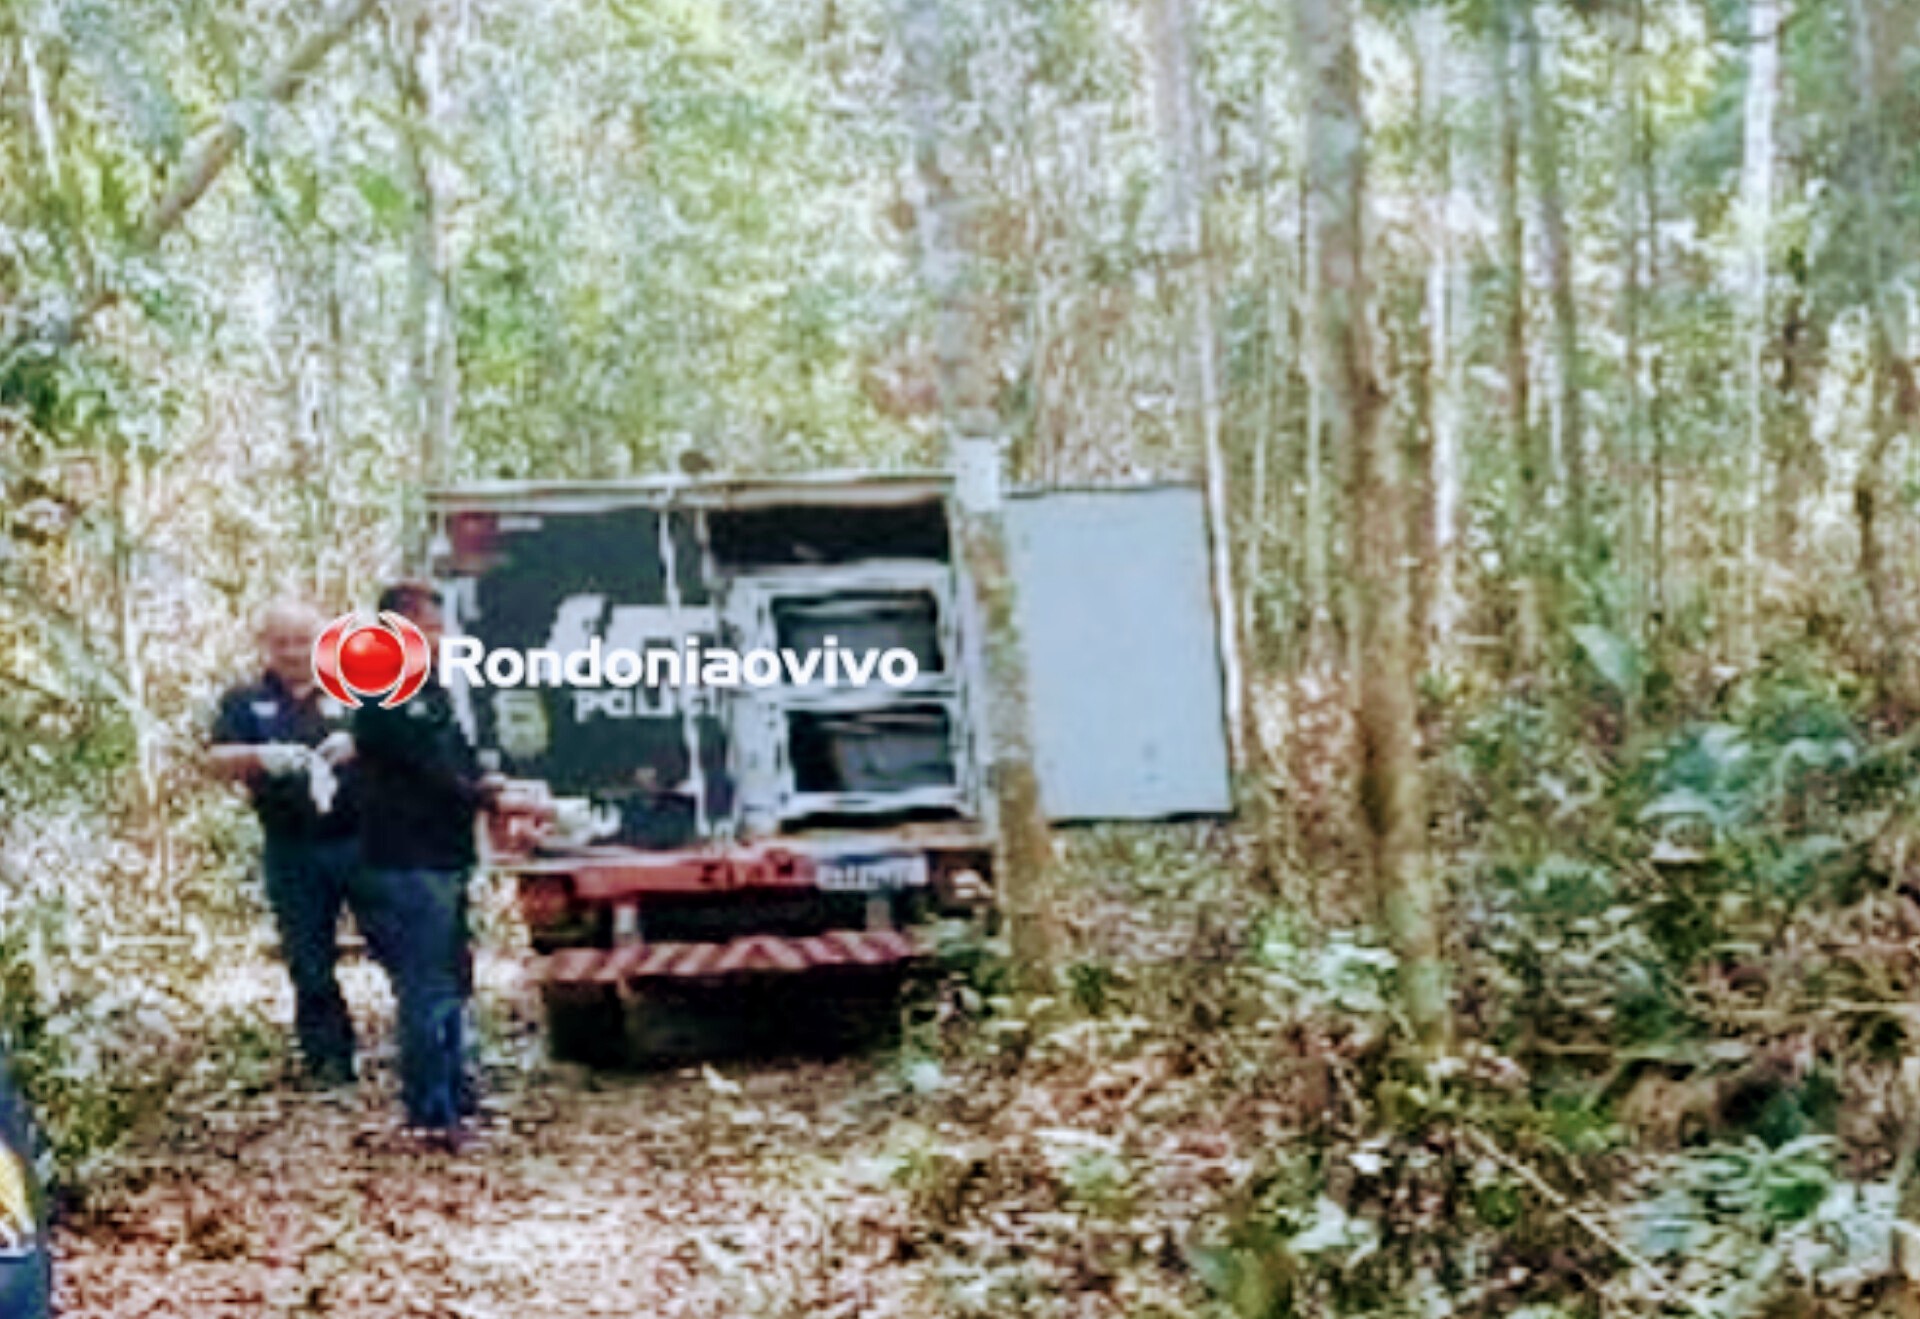 URGENTE: Homem desaparecido é encontrado morto em matagal 